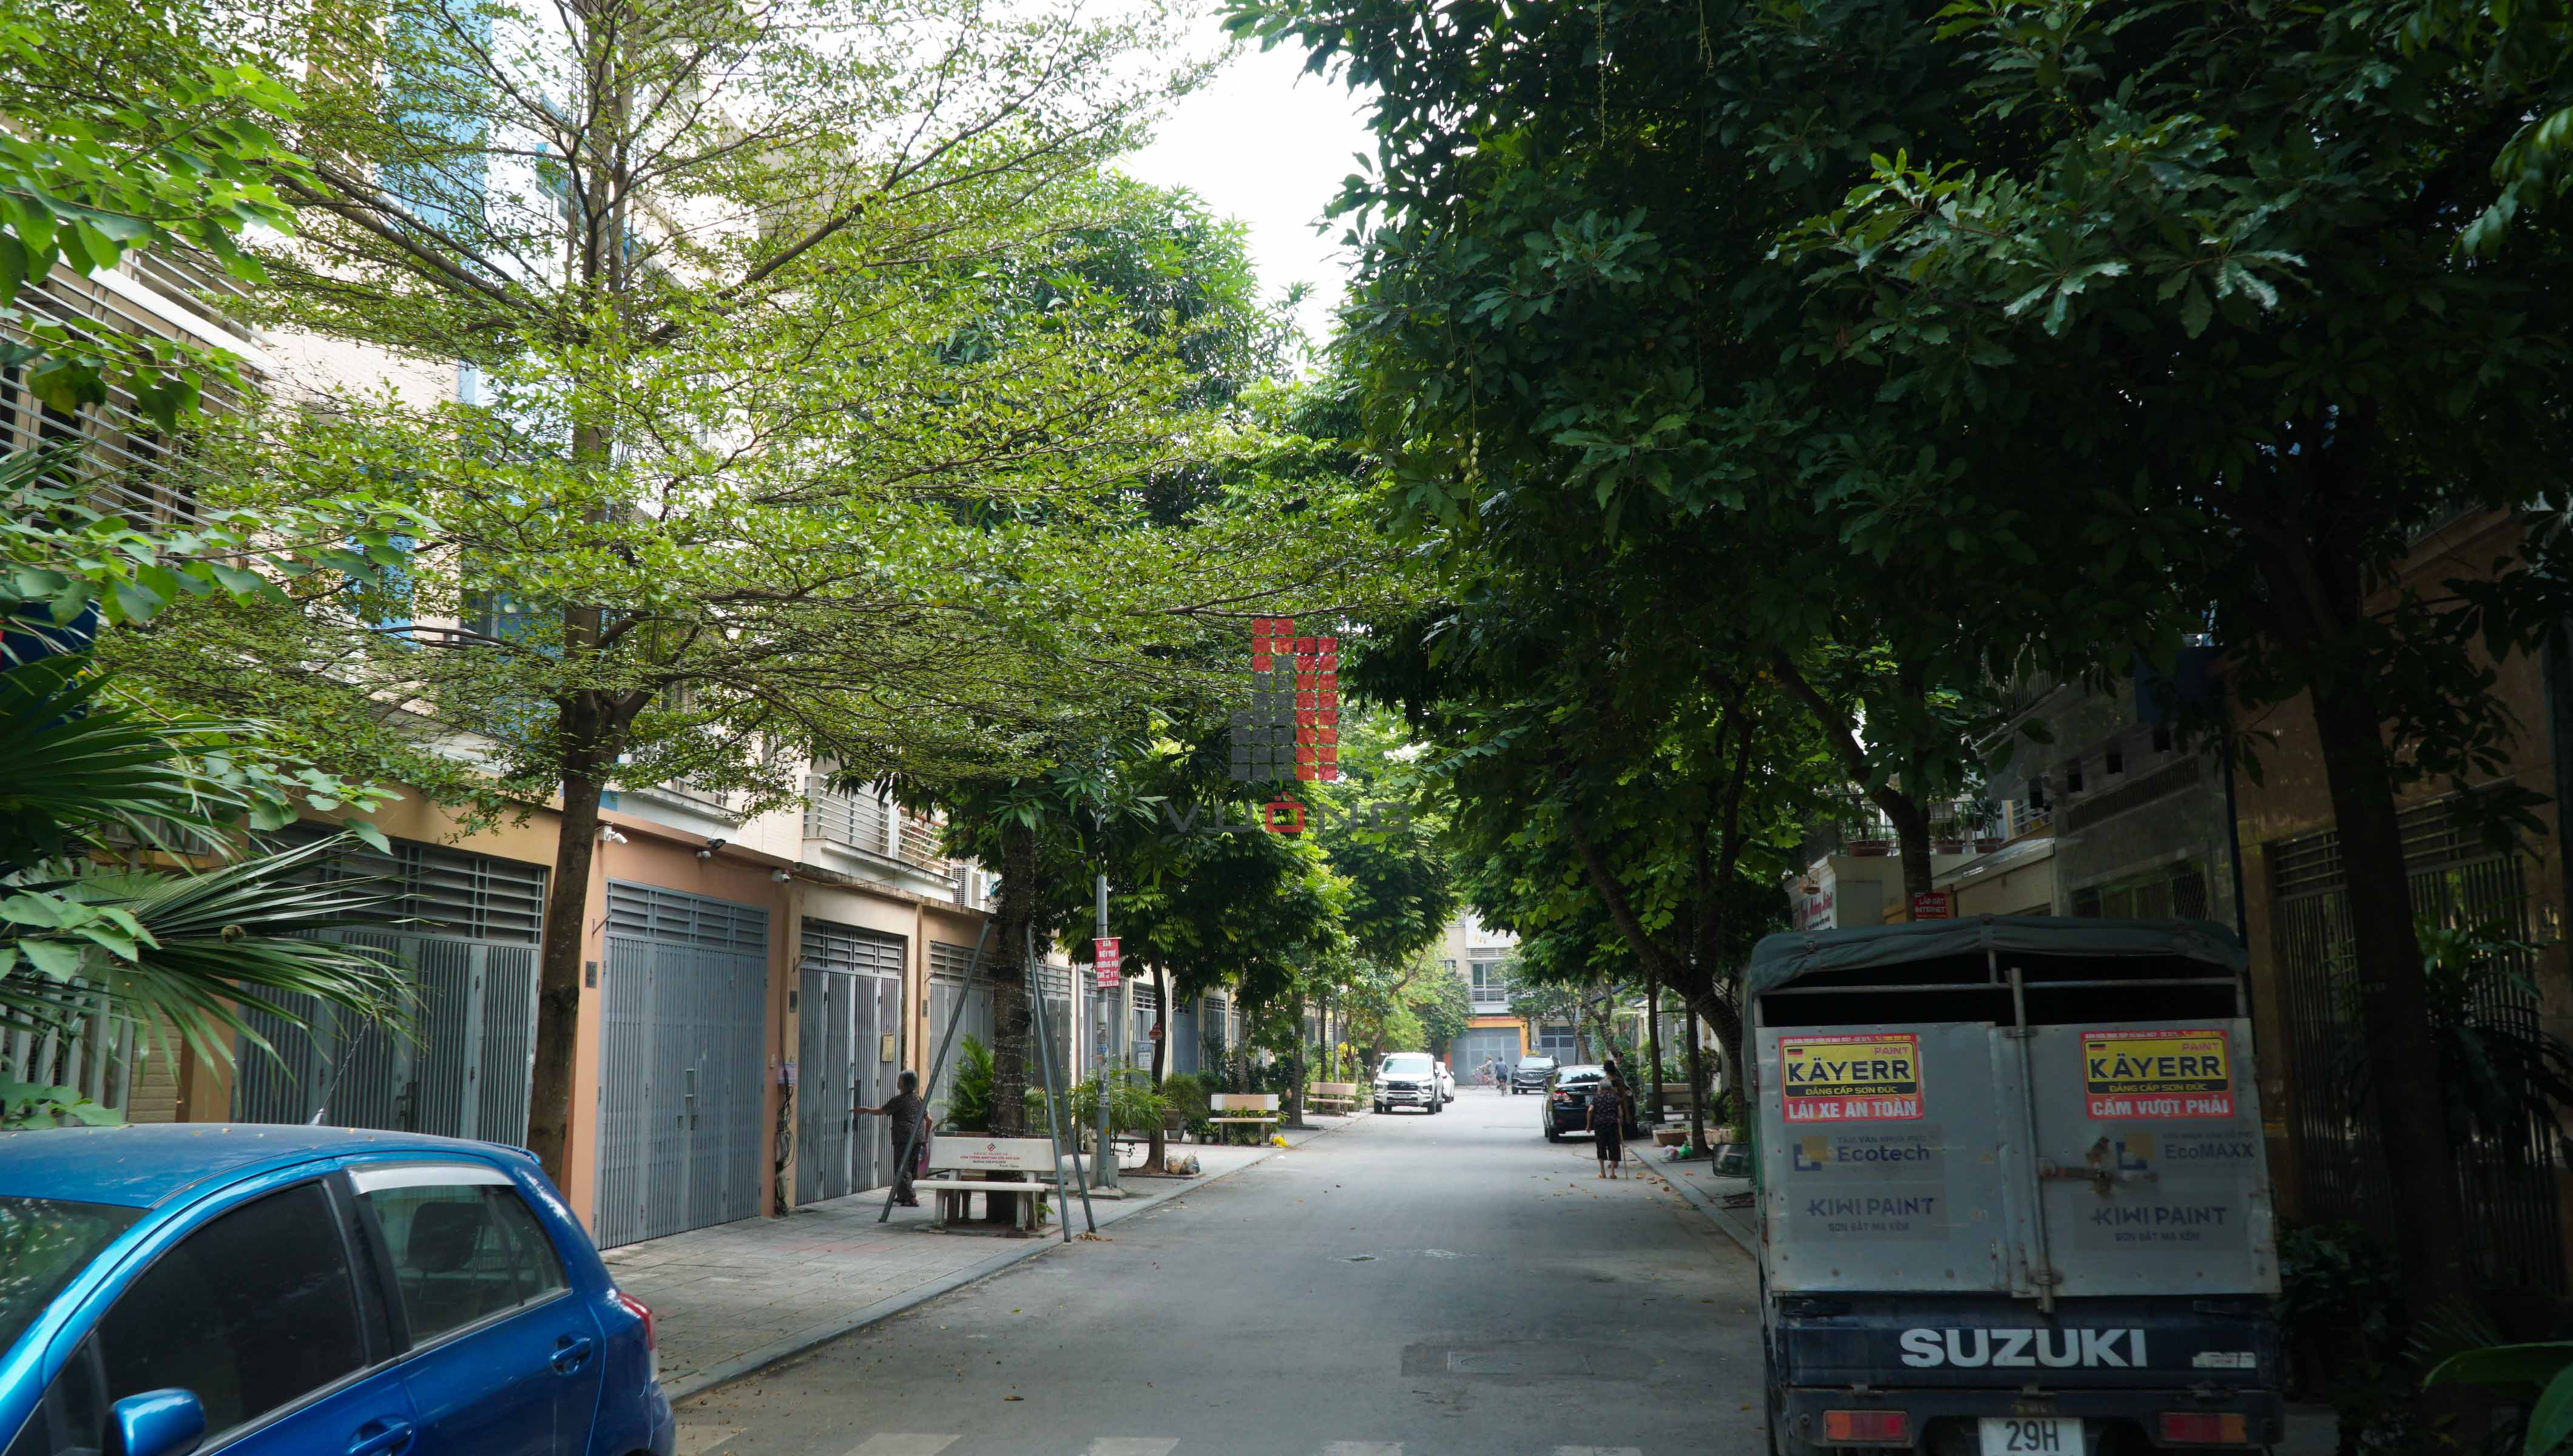 khu vực đường 24m khu đô thị Văn Phú 